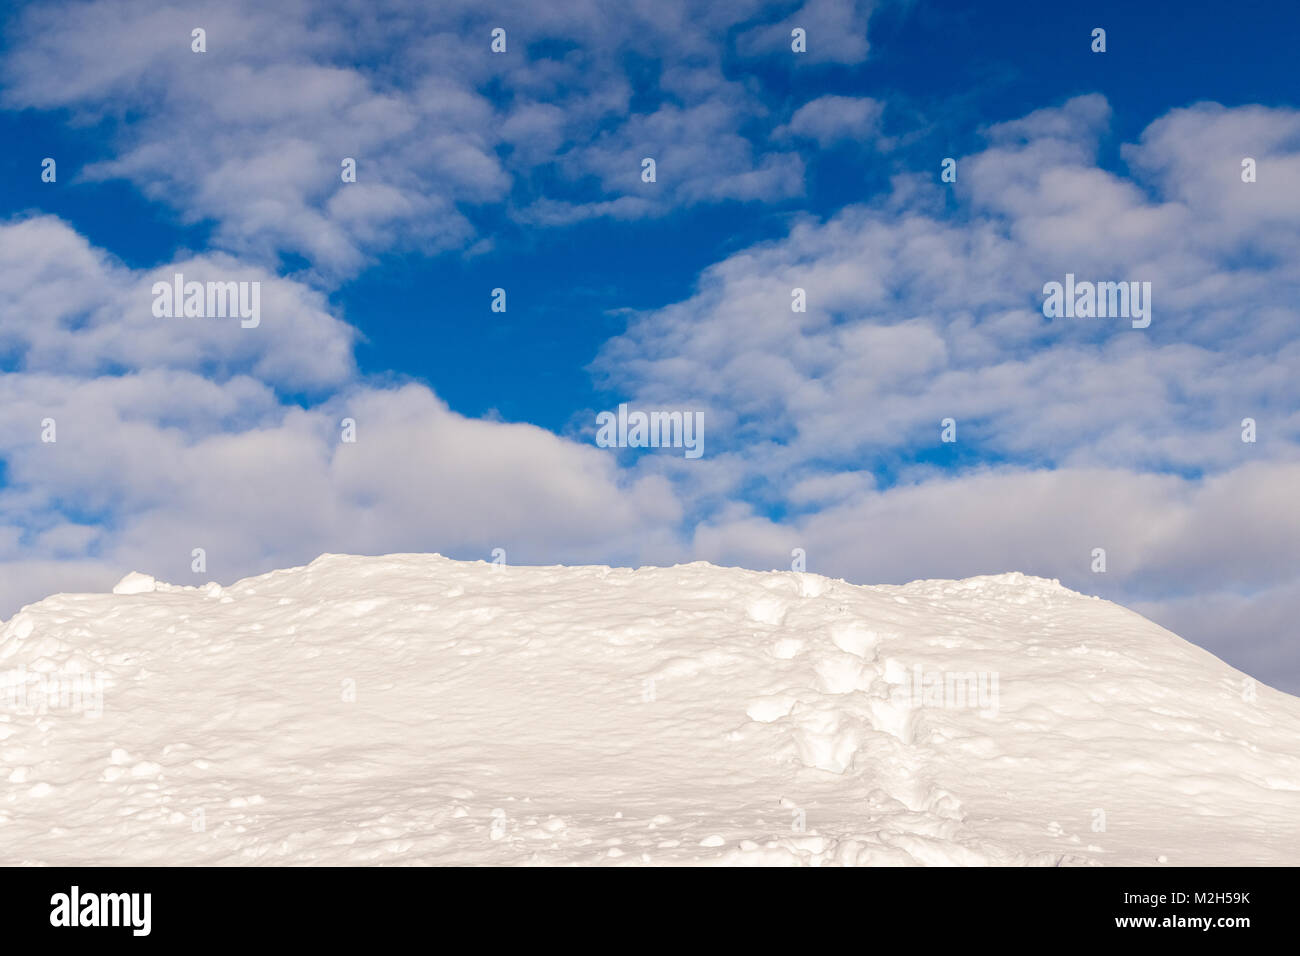 Belle image de fond de Snowdrift, une colline de neige avec les voies d'un humain, de disparaître dans le vide. Ciel bleu et les nuages blancs au-dessus. Banque D'Images